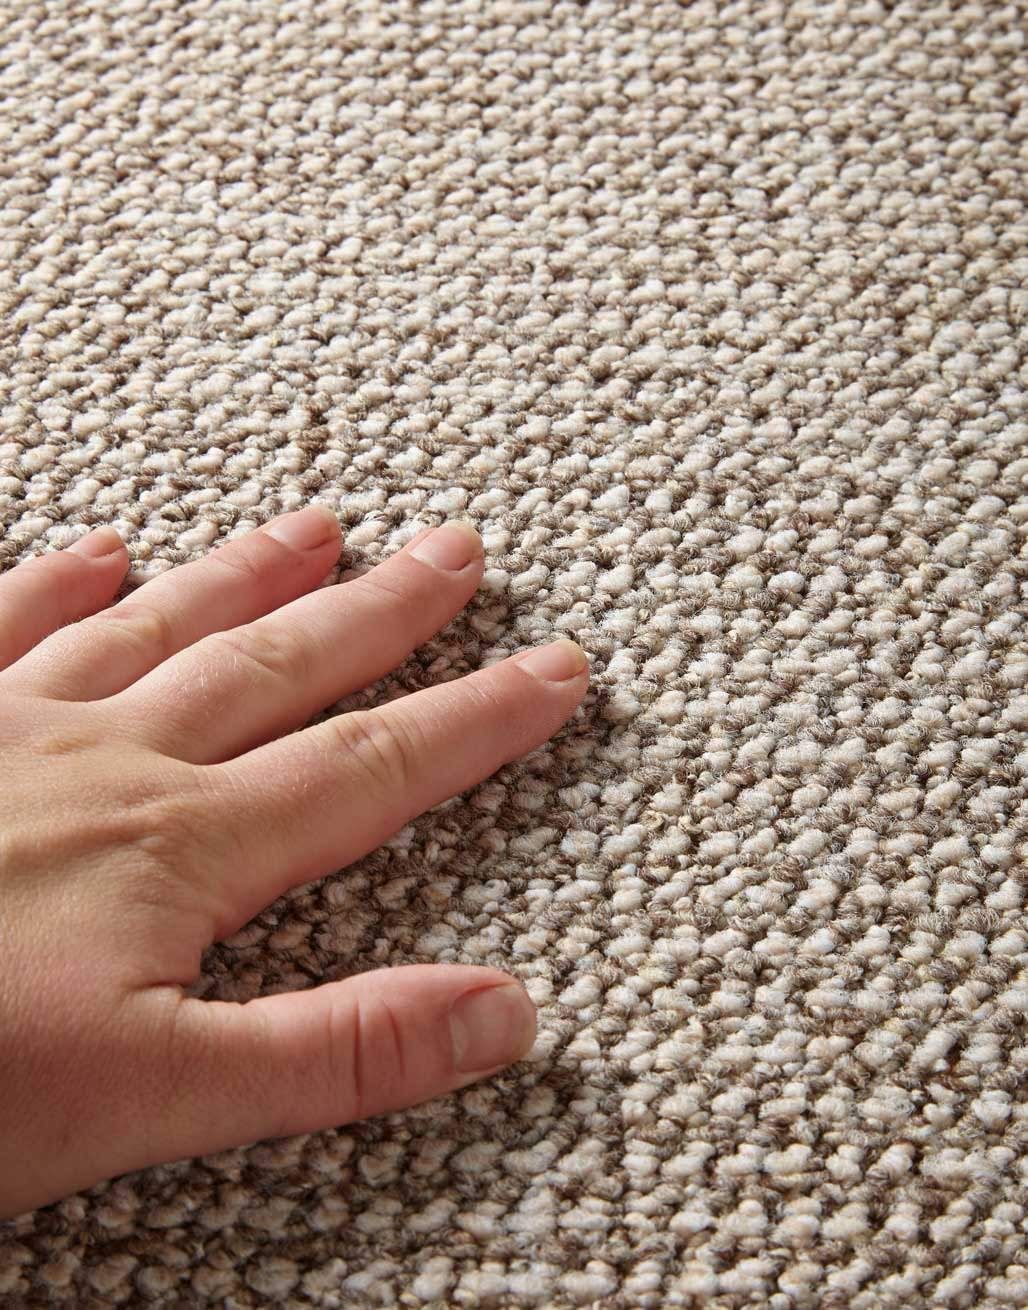 New norfolk carpet